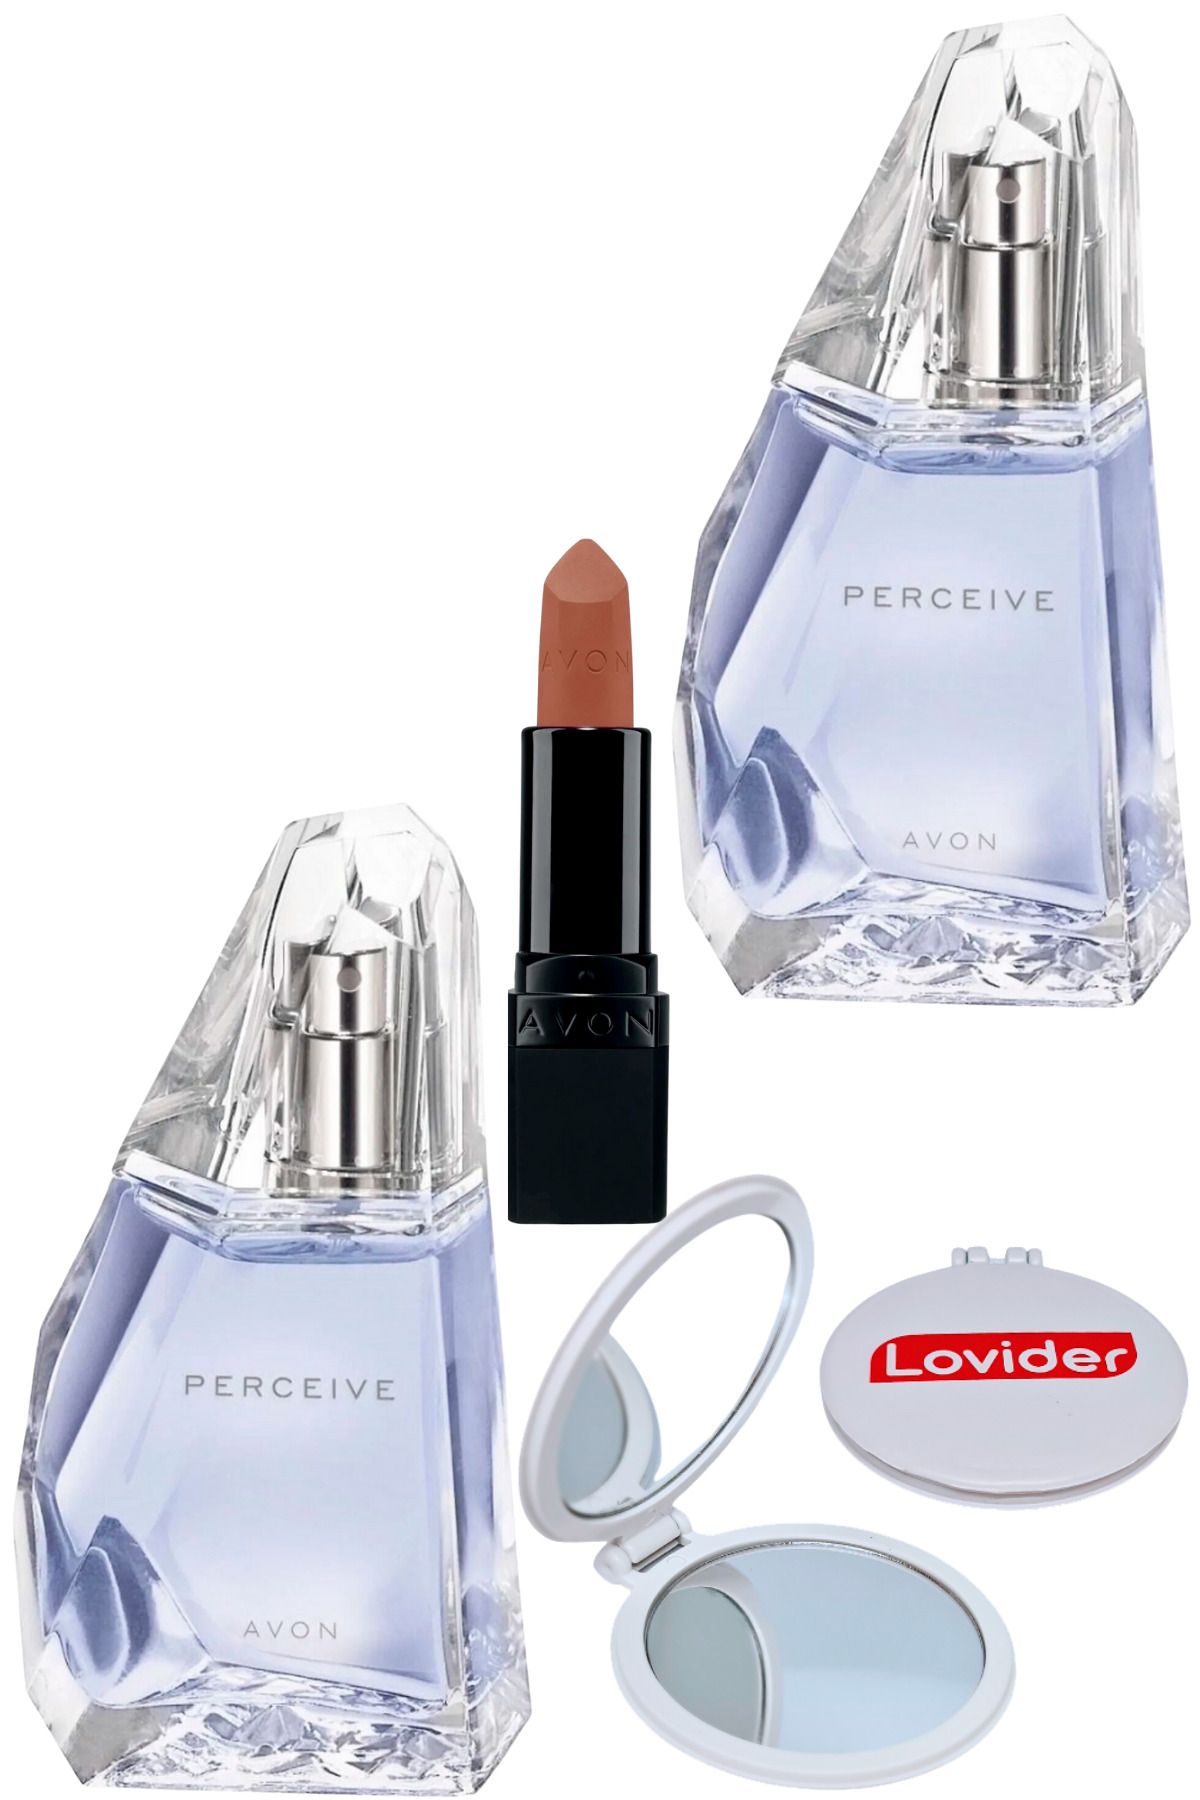 Avon Perceive Kadın Parfüm EDP 50ml 2 Adet + Mat Ruj Marvellous Mocha + Lovider Cep Aynası Hediye